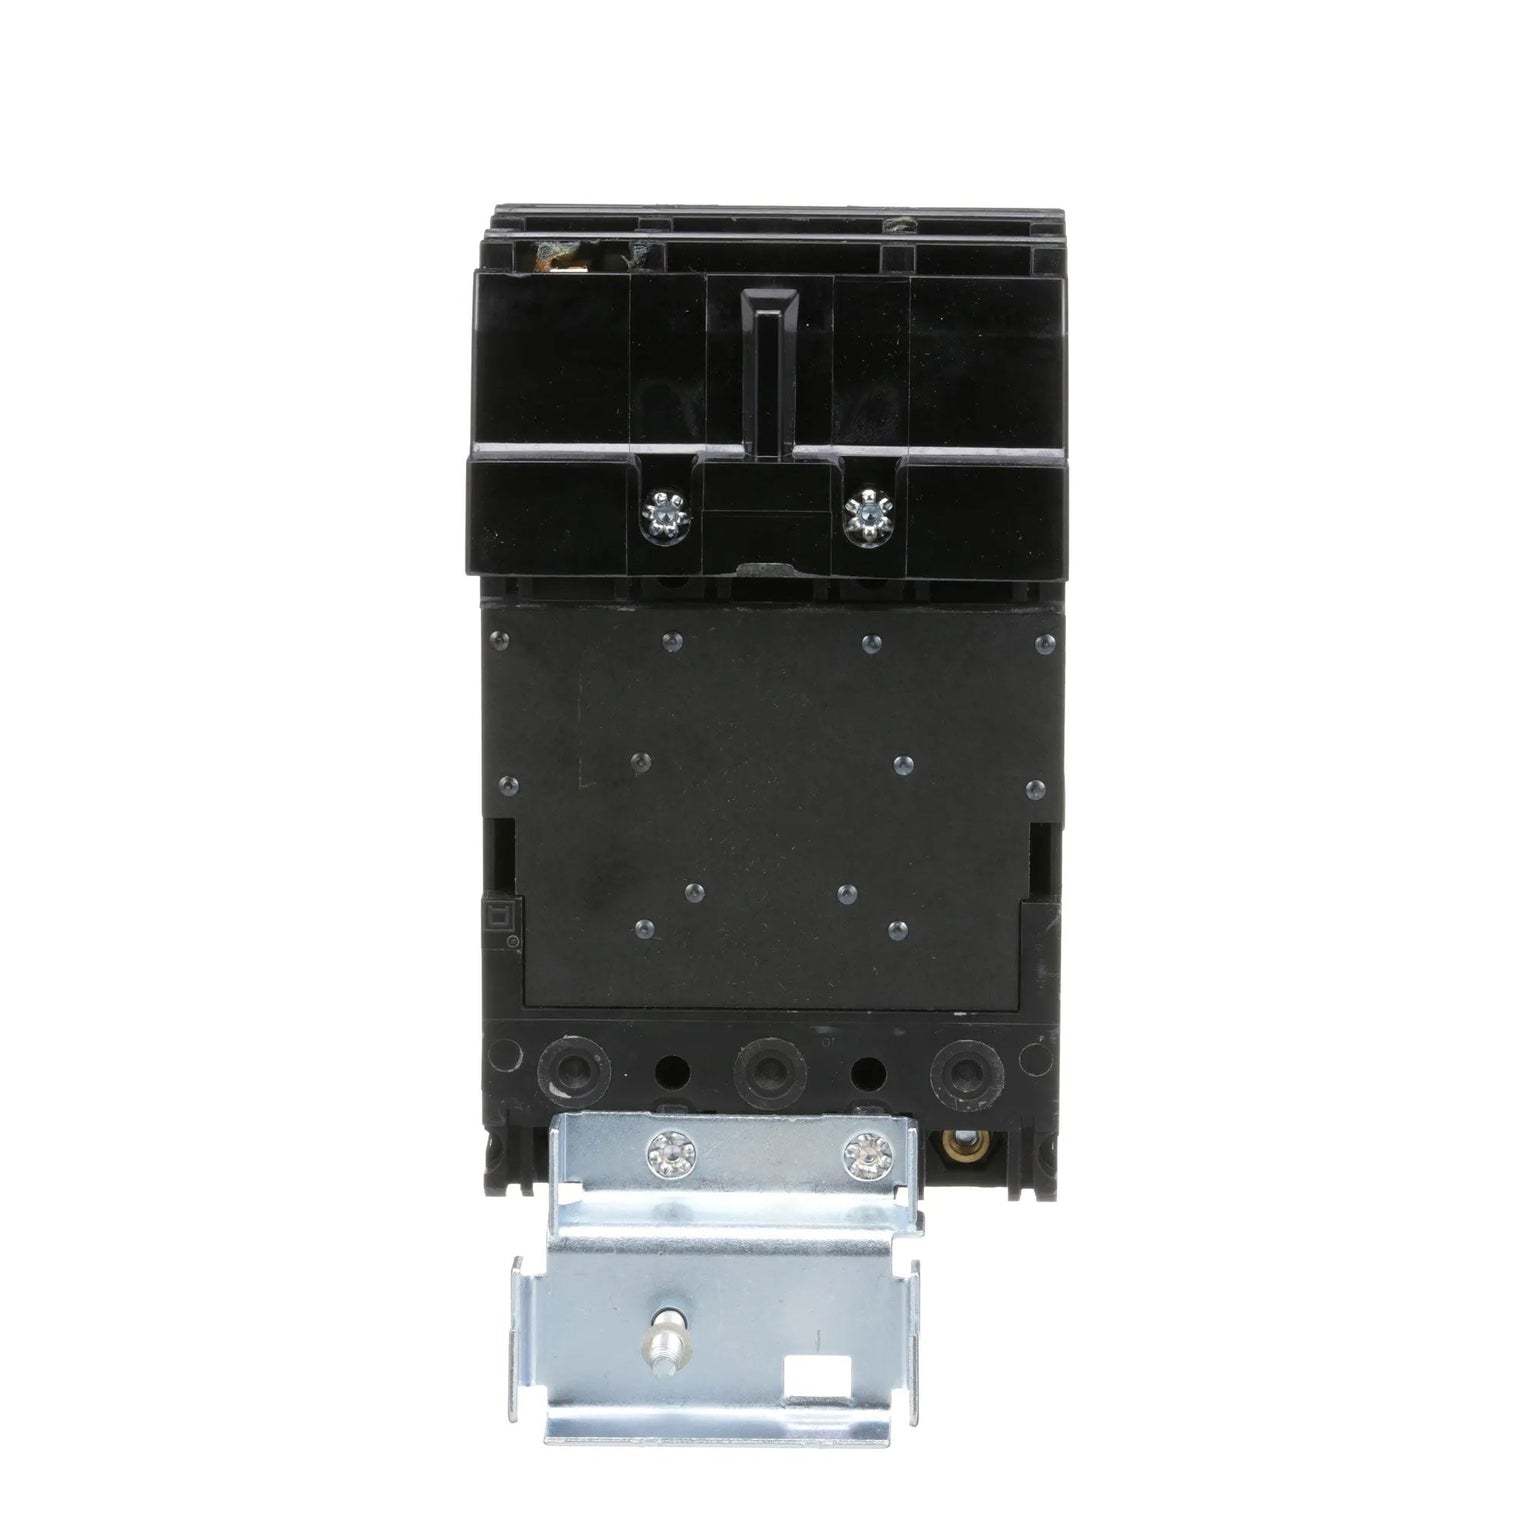 FA36060 - Square D - Molded Case Circuit Breaker